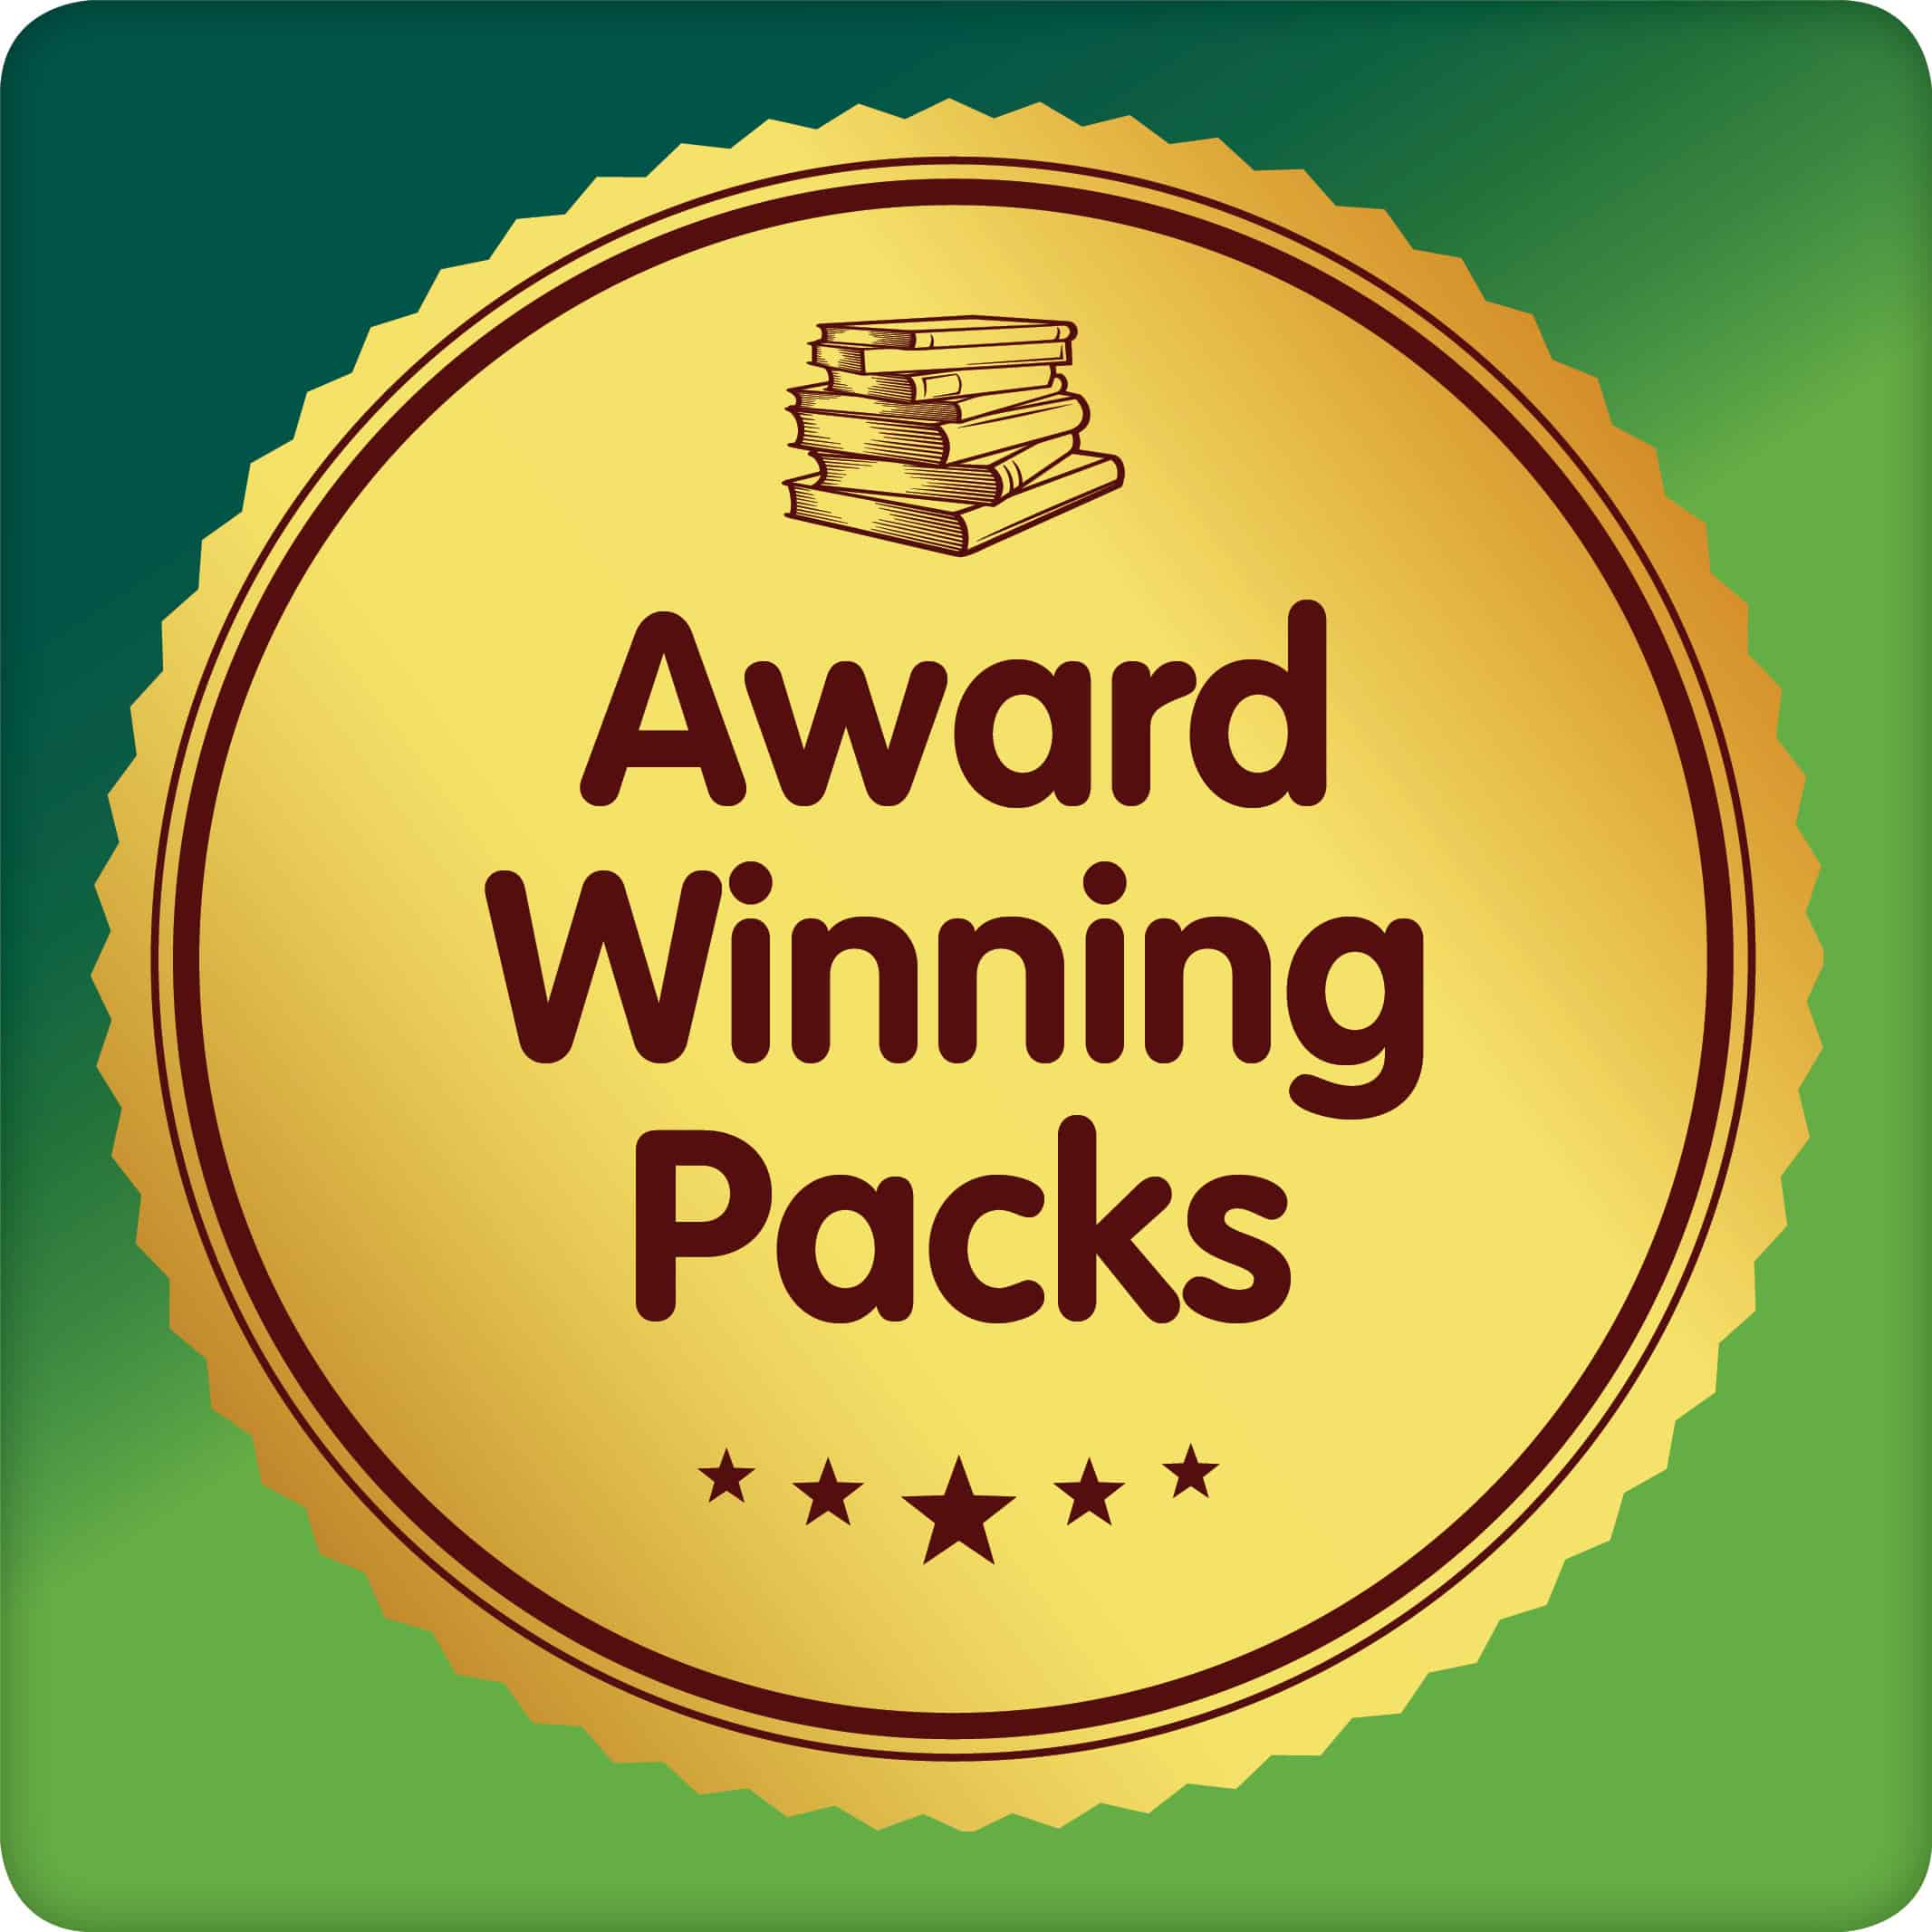 Award_Winning_Packs_Button_1024x1024pixels